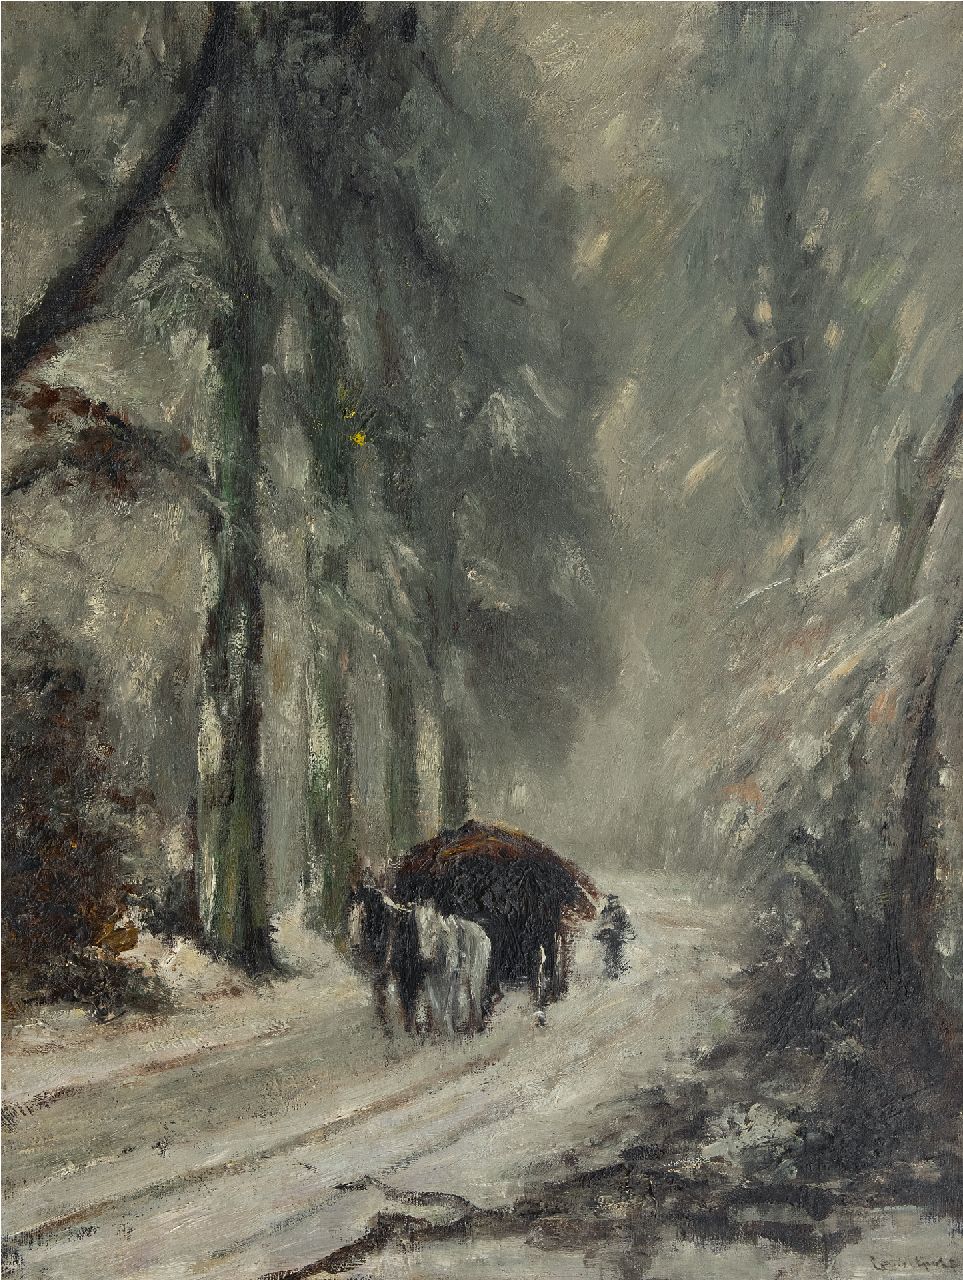 Apol L.F.H.  | Lodewijk Franciscus Hendrik 'Louis' Apol | Schilderijen te koop aangeboden | Na de sneeuwval: paard en wagen op besneeuwd bospad, olieverf op doek 81,0 x 61,0 cm, gesigneerd linksonder